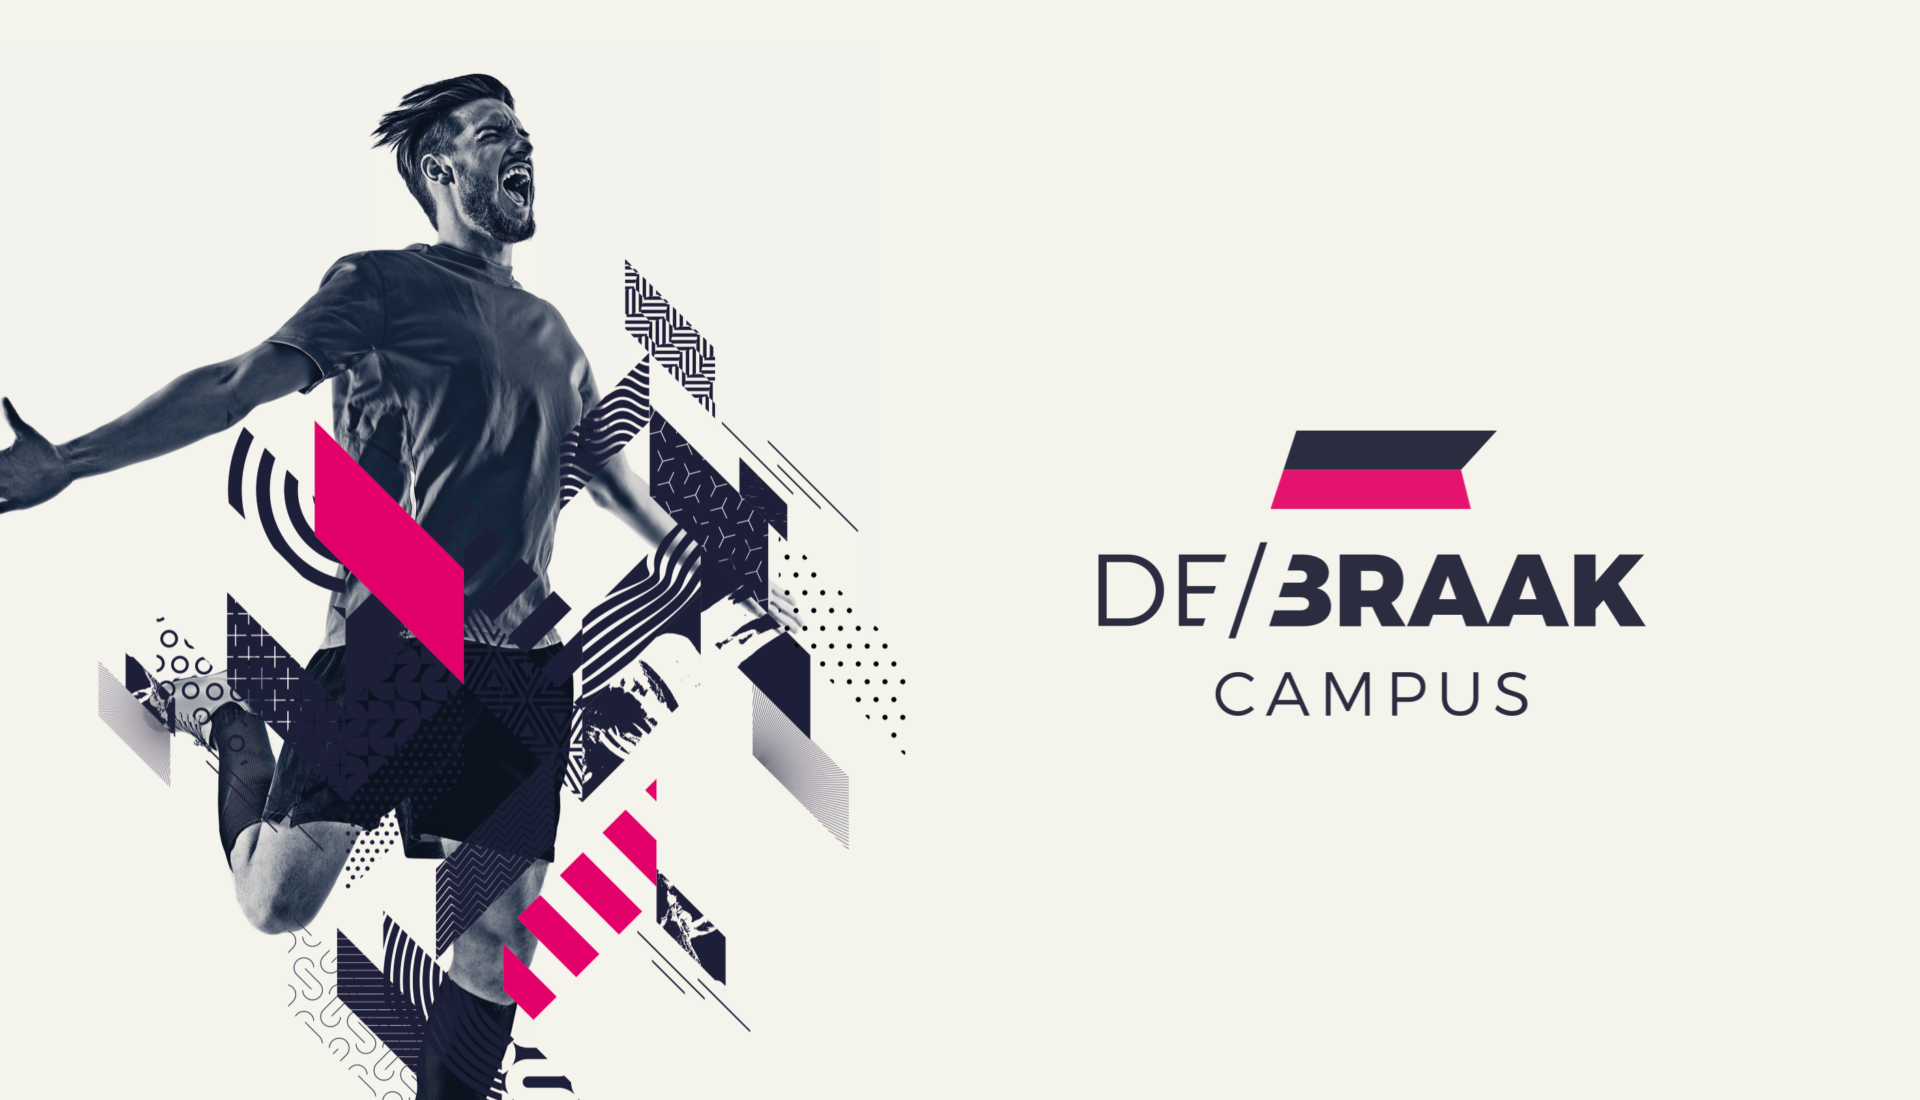 Beeld en logo voor Campus De Braak met voetballer en grafisch huisstijlelement